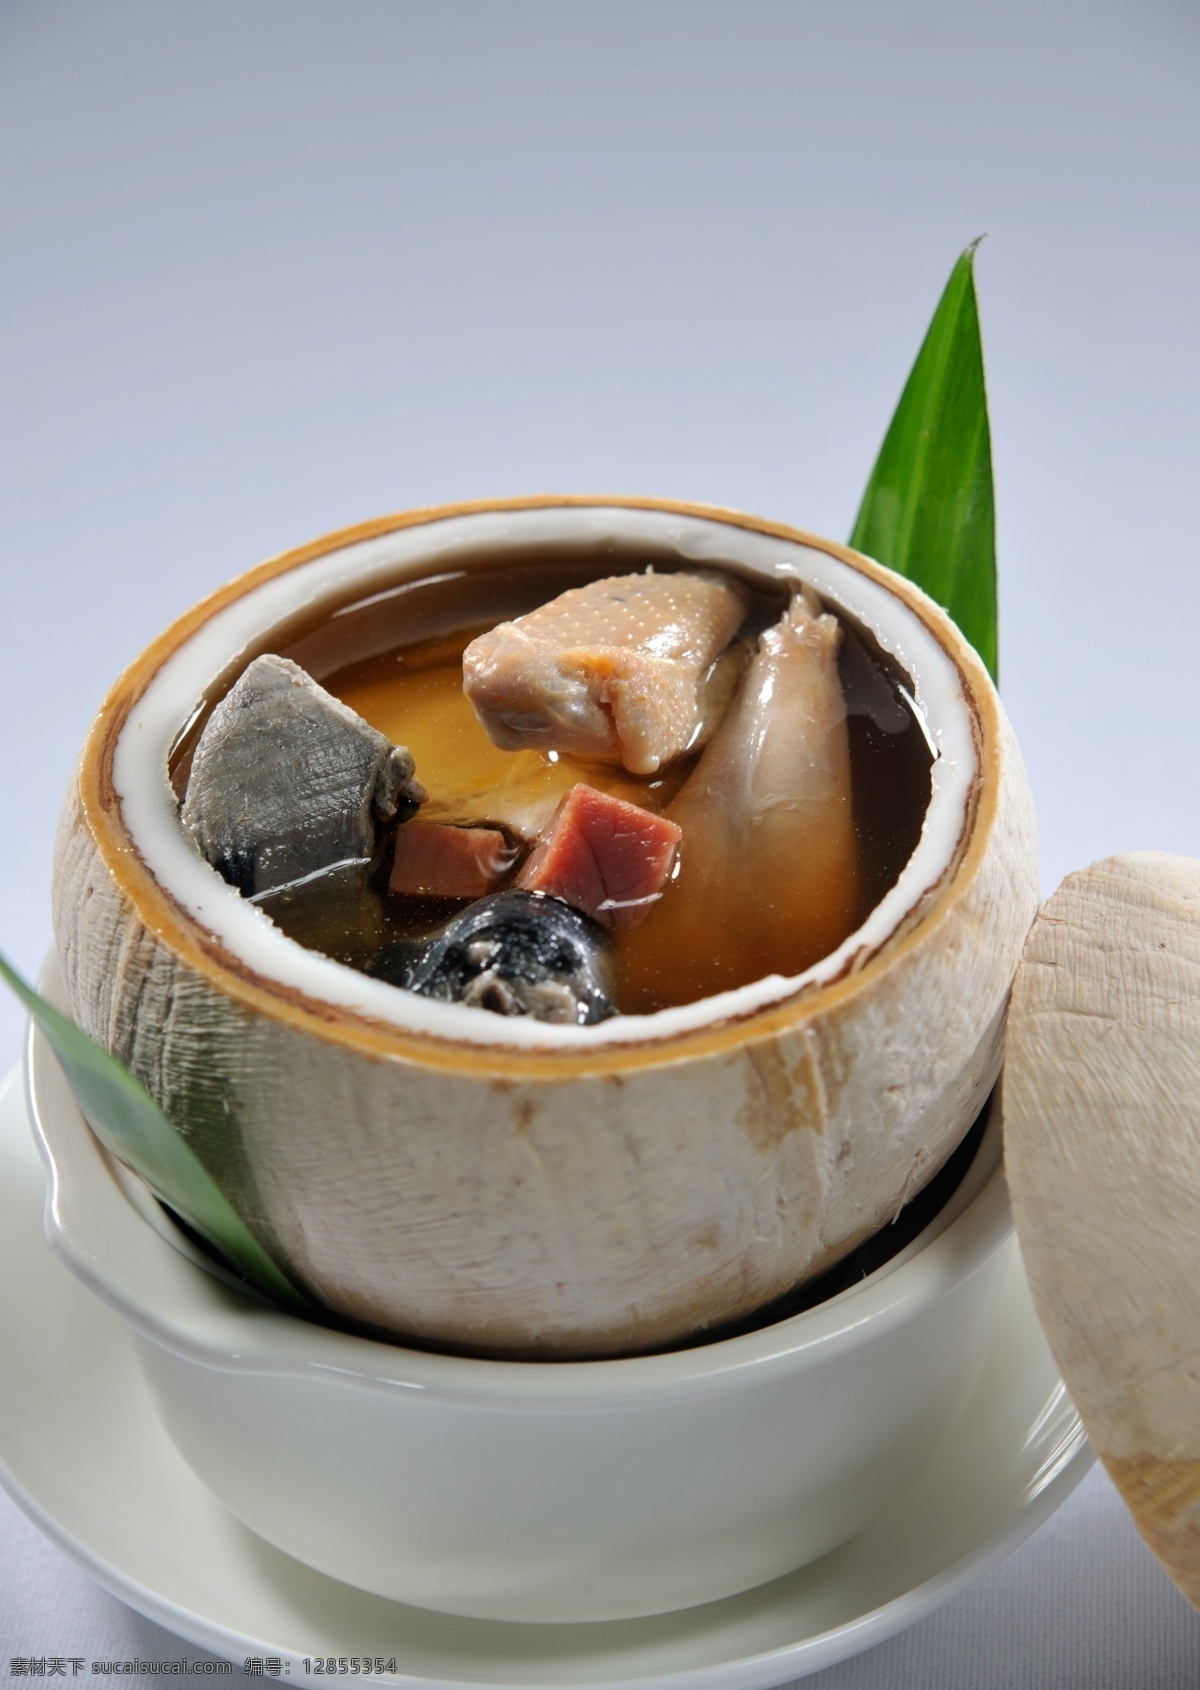 椰子炖鸡 竹丝鸡 椰子 美食 营养美食 传统美食 餐饮美食